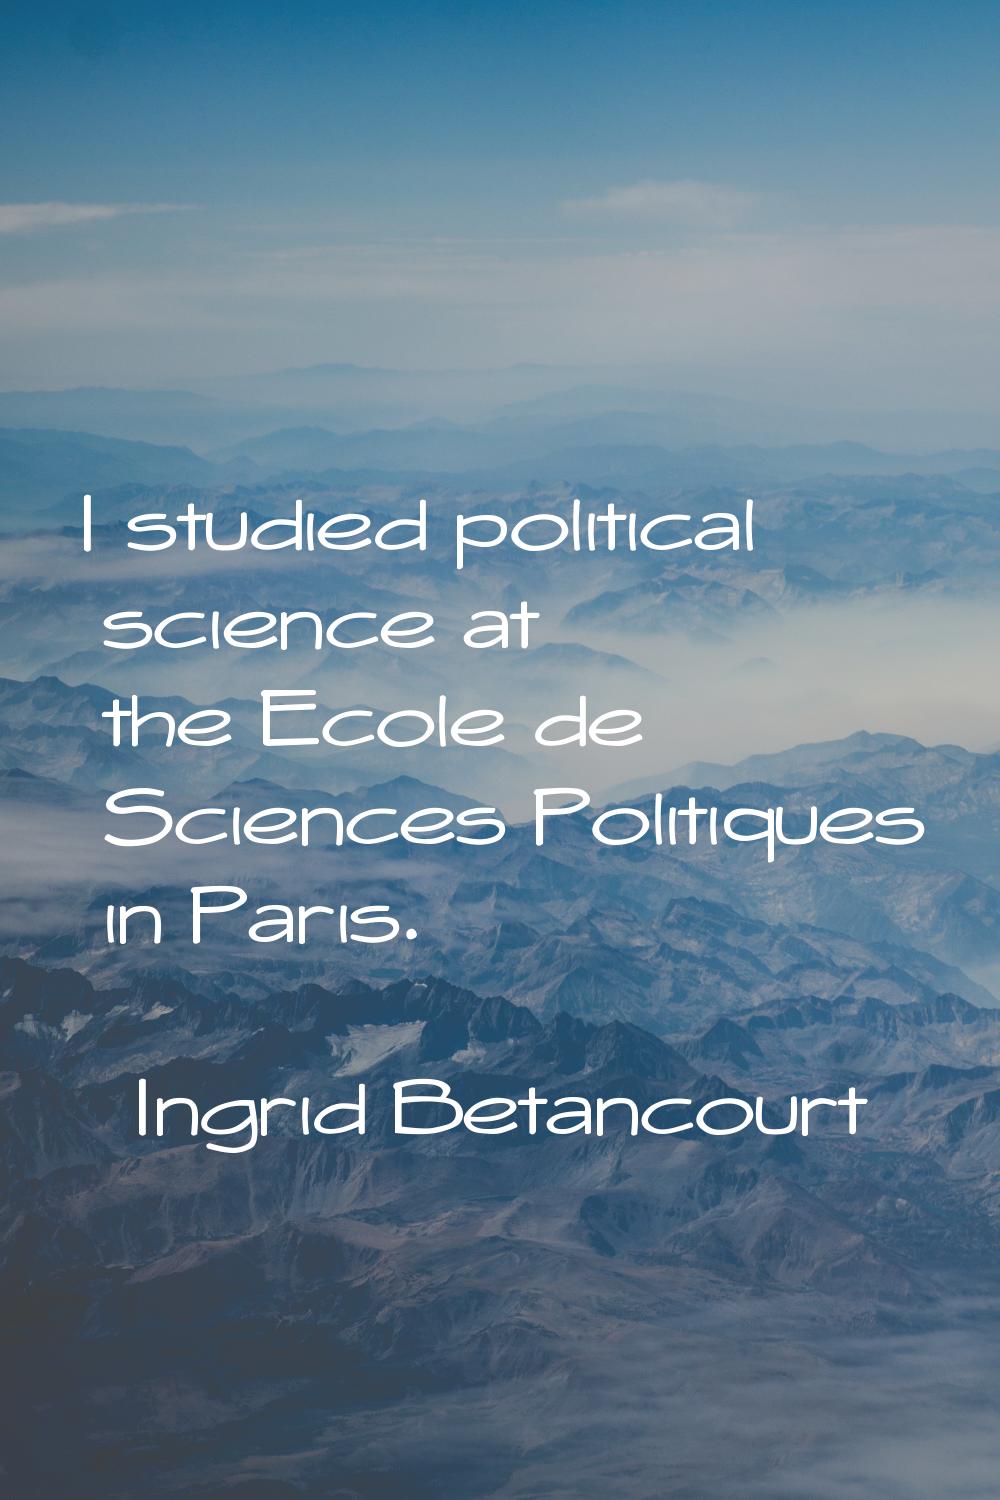 I studied political science at the Ecole de Sciences Politiques in Paris.